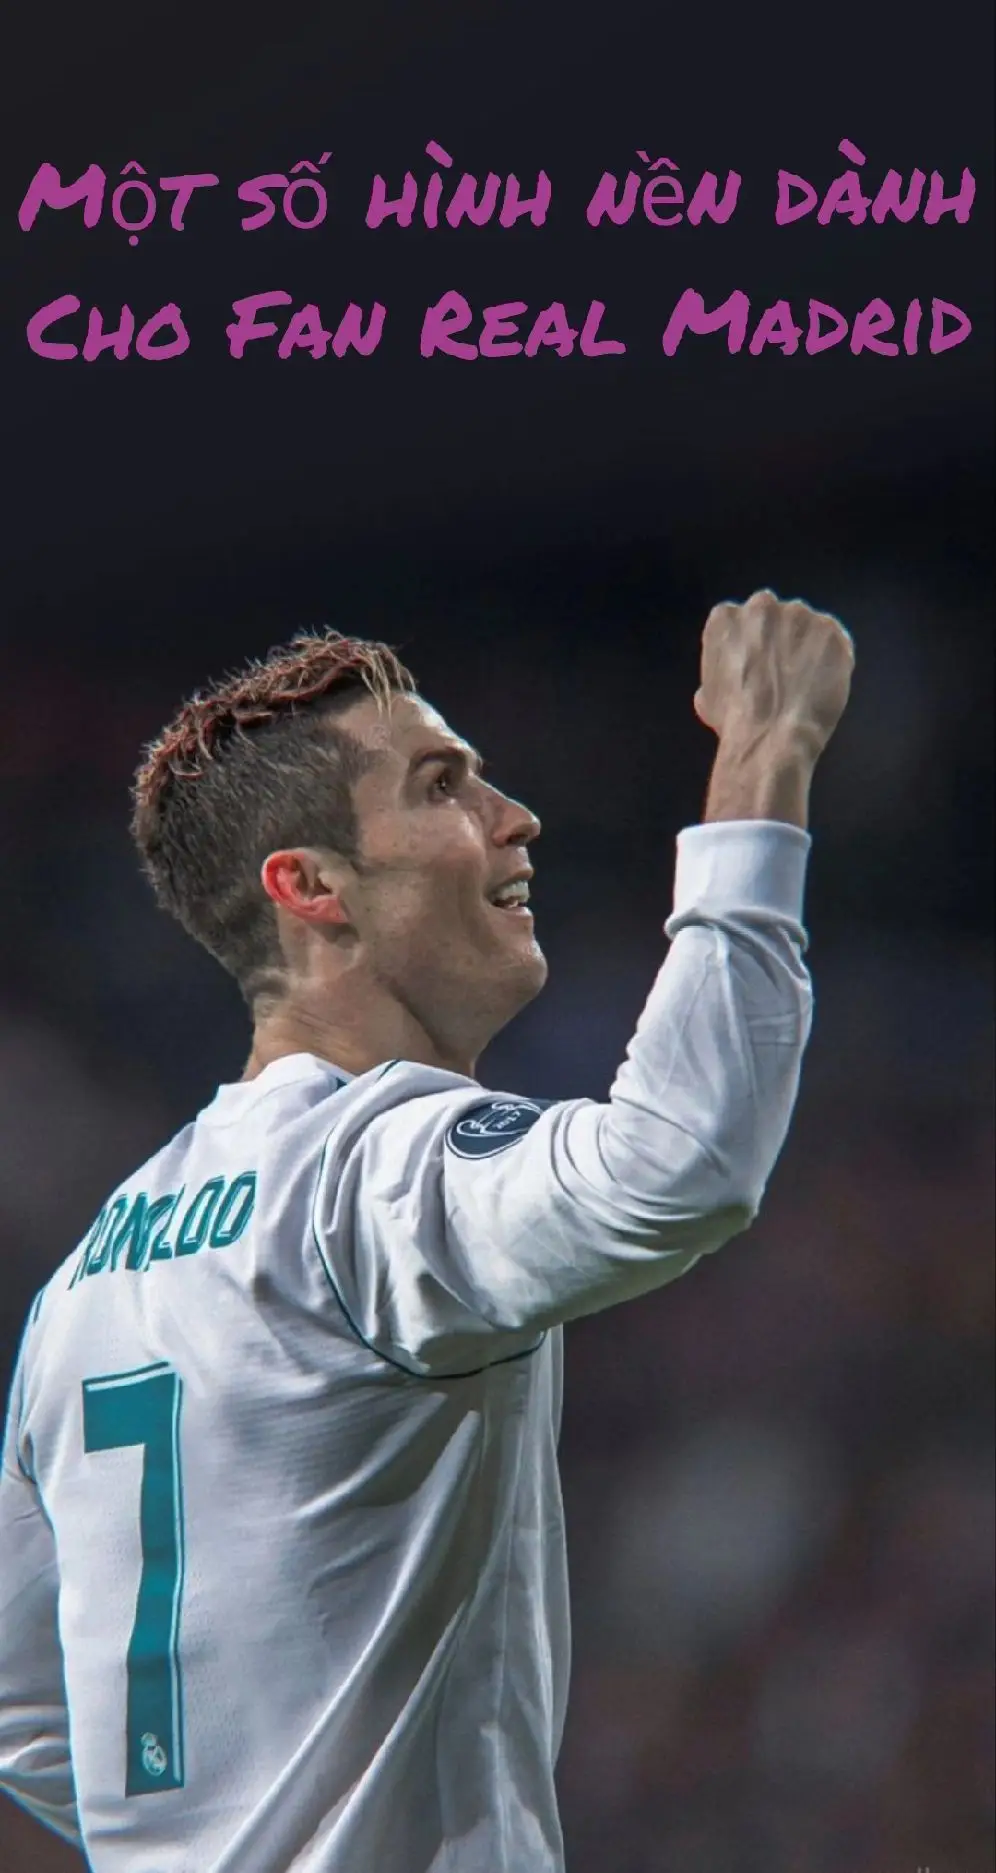 Một số hình nền dành cho Fan Real Madrid  #4k #realmadrid #football #xuhuong #trending 